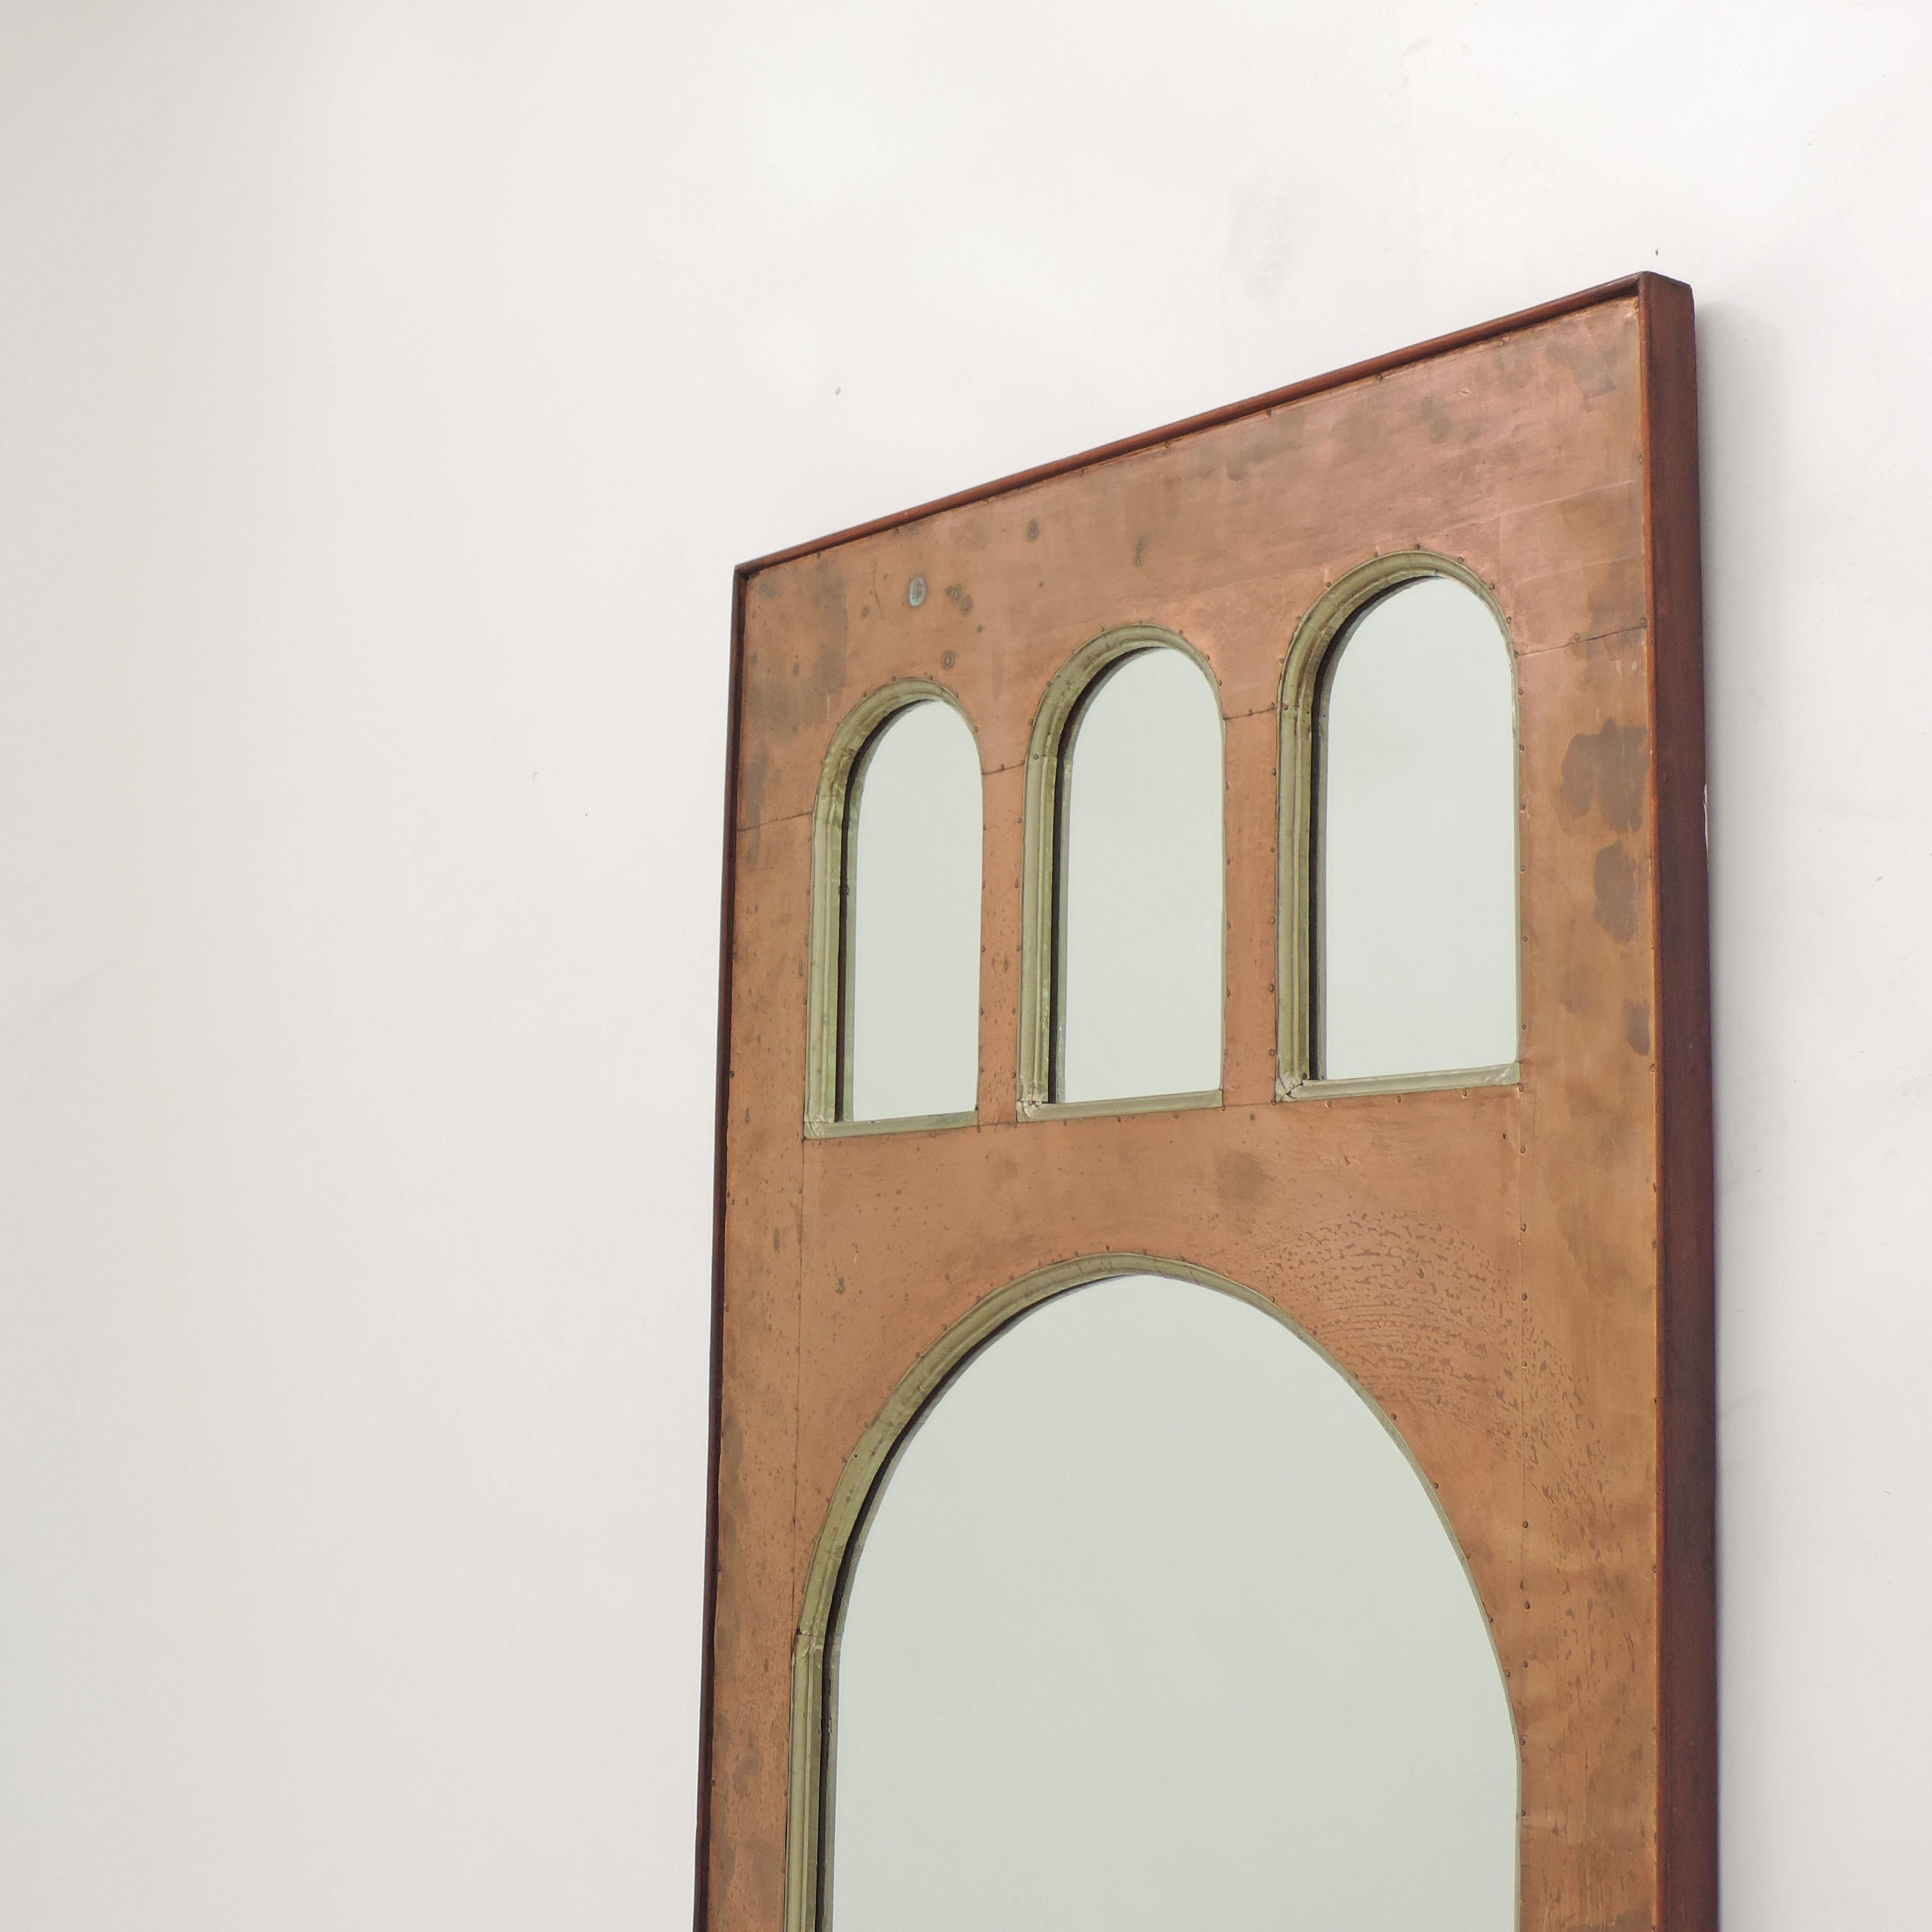 Magnifique miroir mural en cuivre Pontiesque classique italien métaphysique des années 1950-1960.
Feuilles de cuivre et d'aluminium martelées sur bois.
Attribué à Lorenzo Burchiellaro.
  